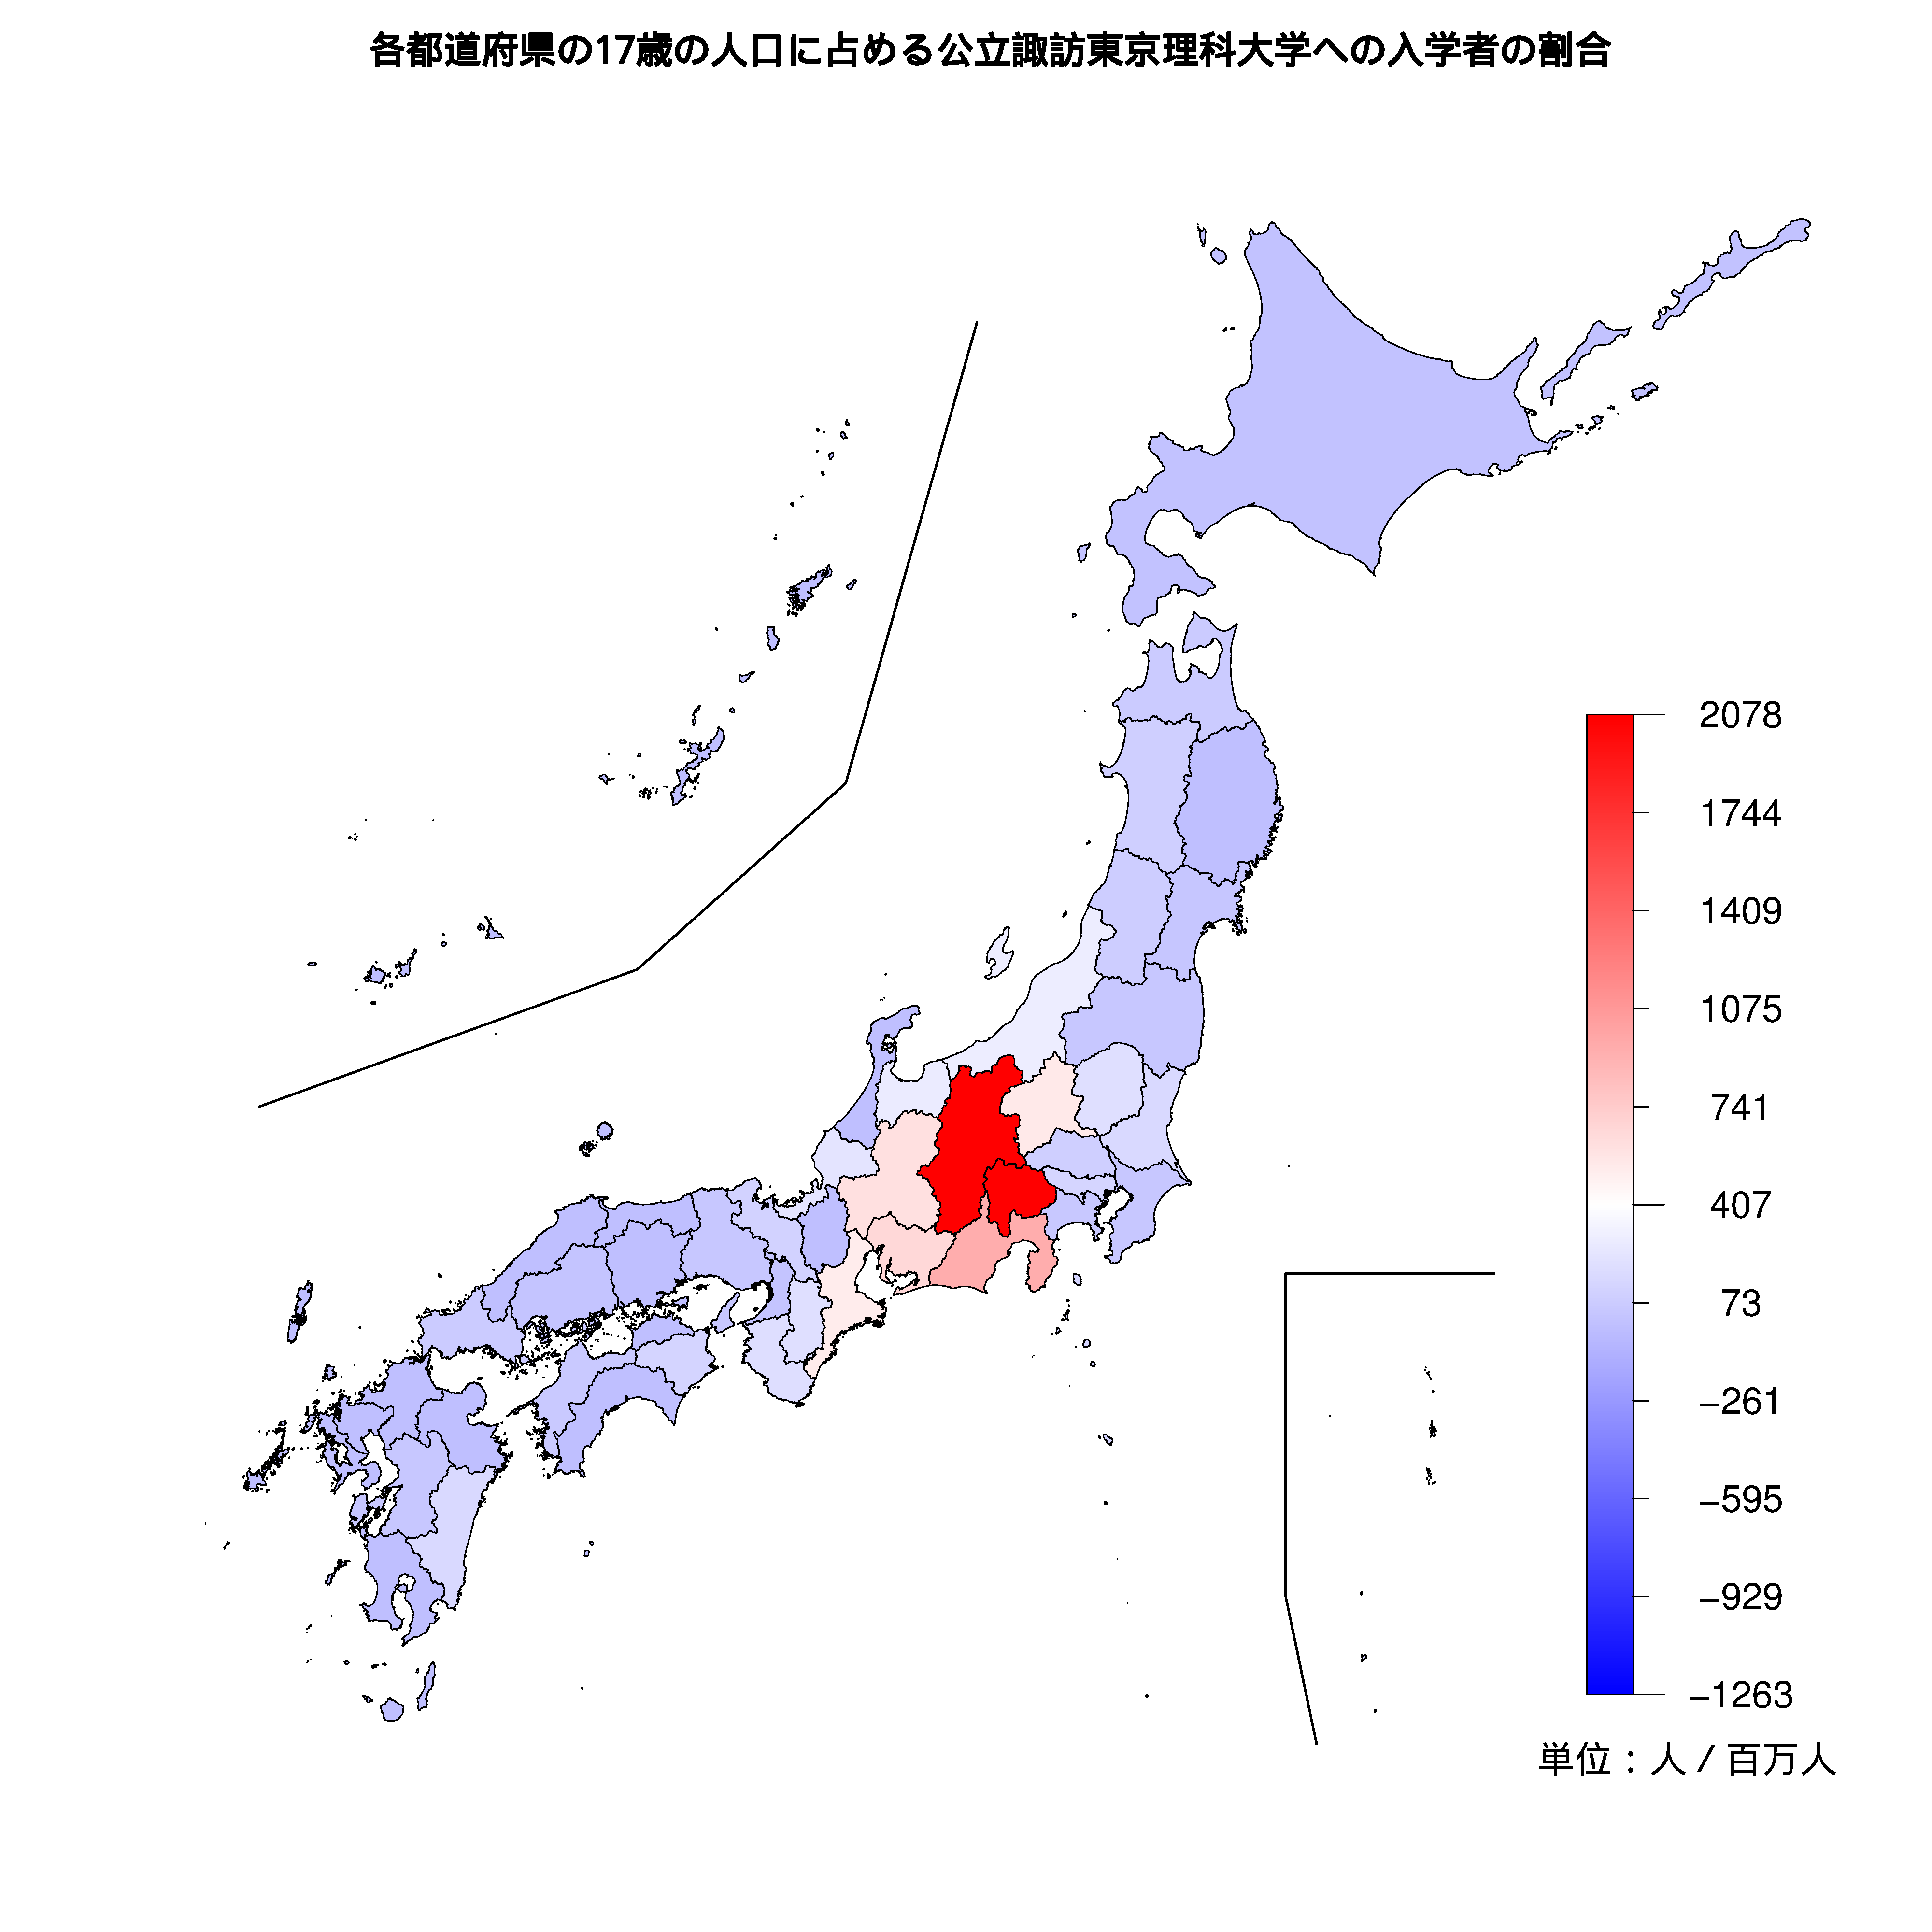 公立諏訪東京理科大学への入学者が多い都道府県の色分け地図